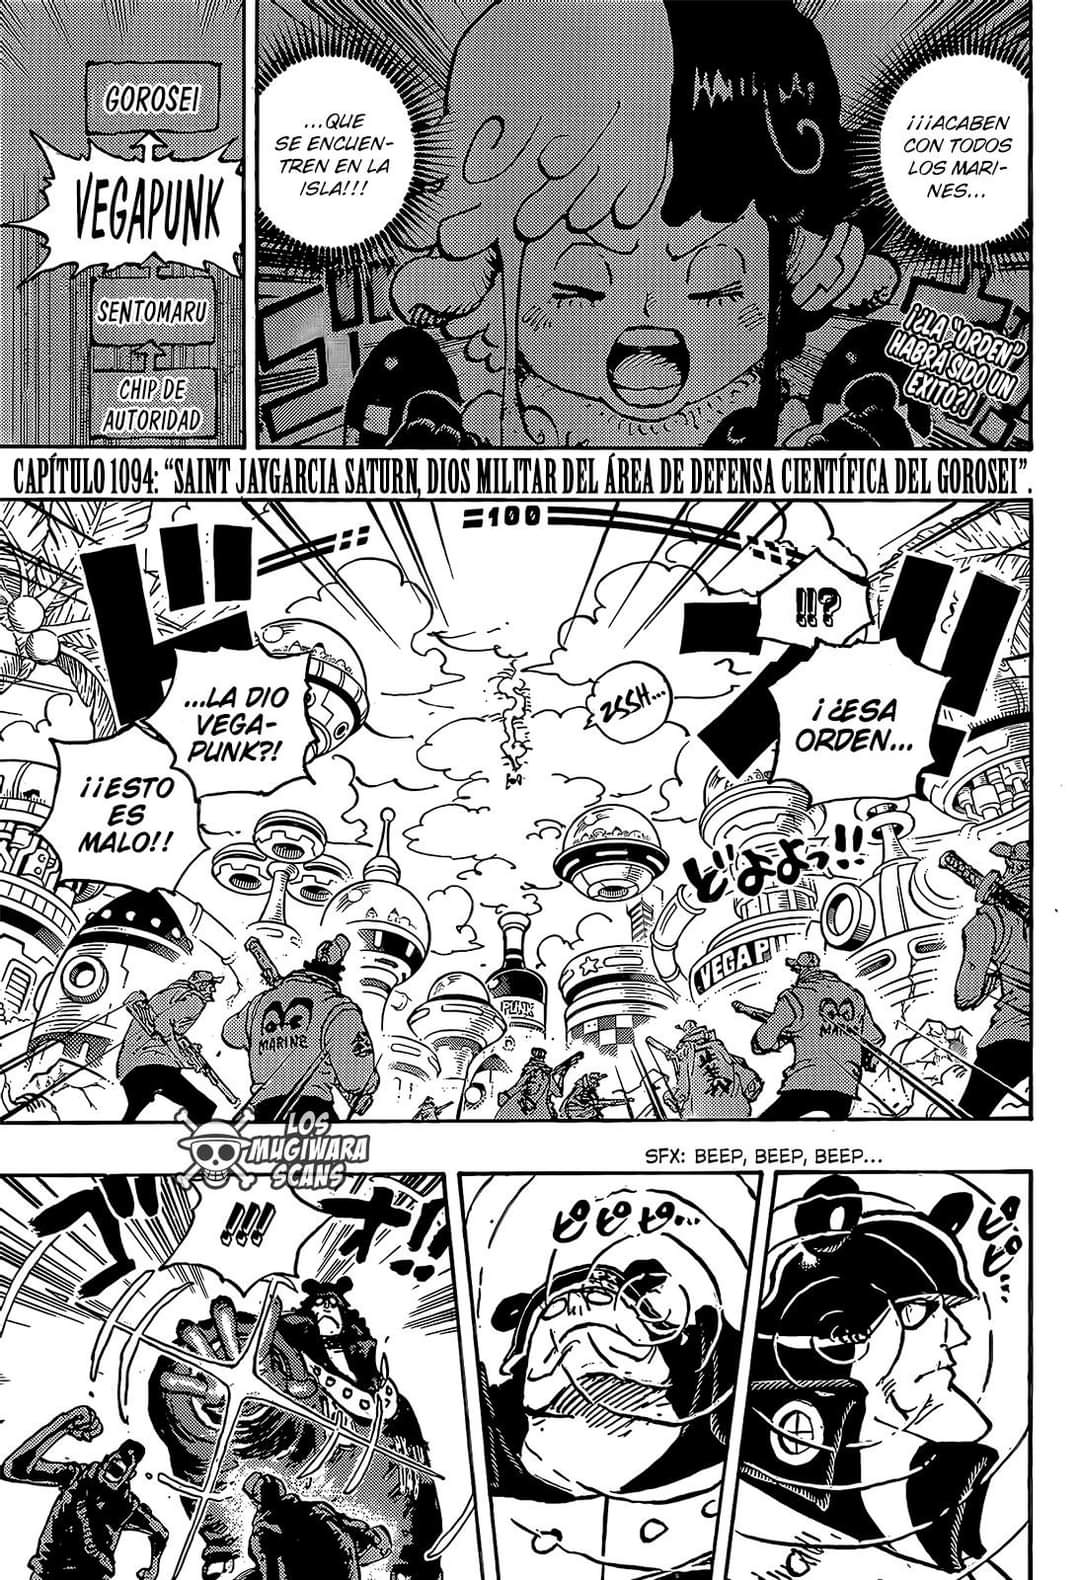 Los primeros spoilers del capítulo 1094 del manga de One Piece revelan la  aparición estelar de uno de los personajes más poderosos de toda la serie